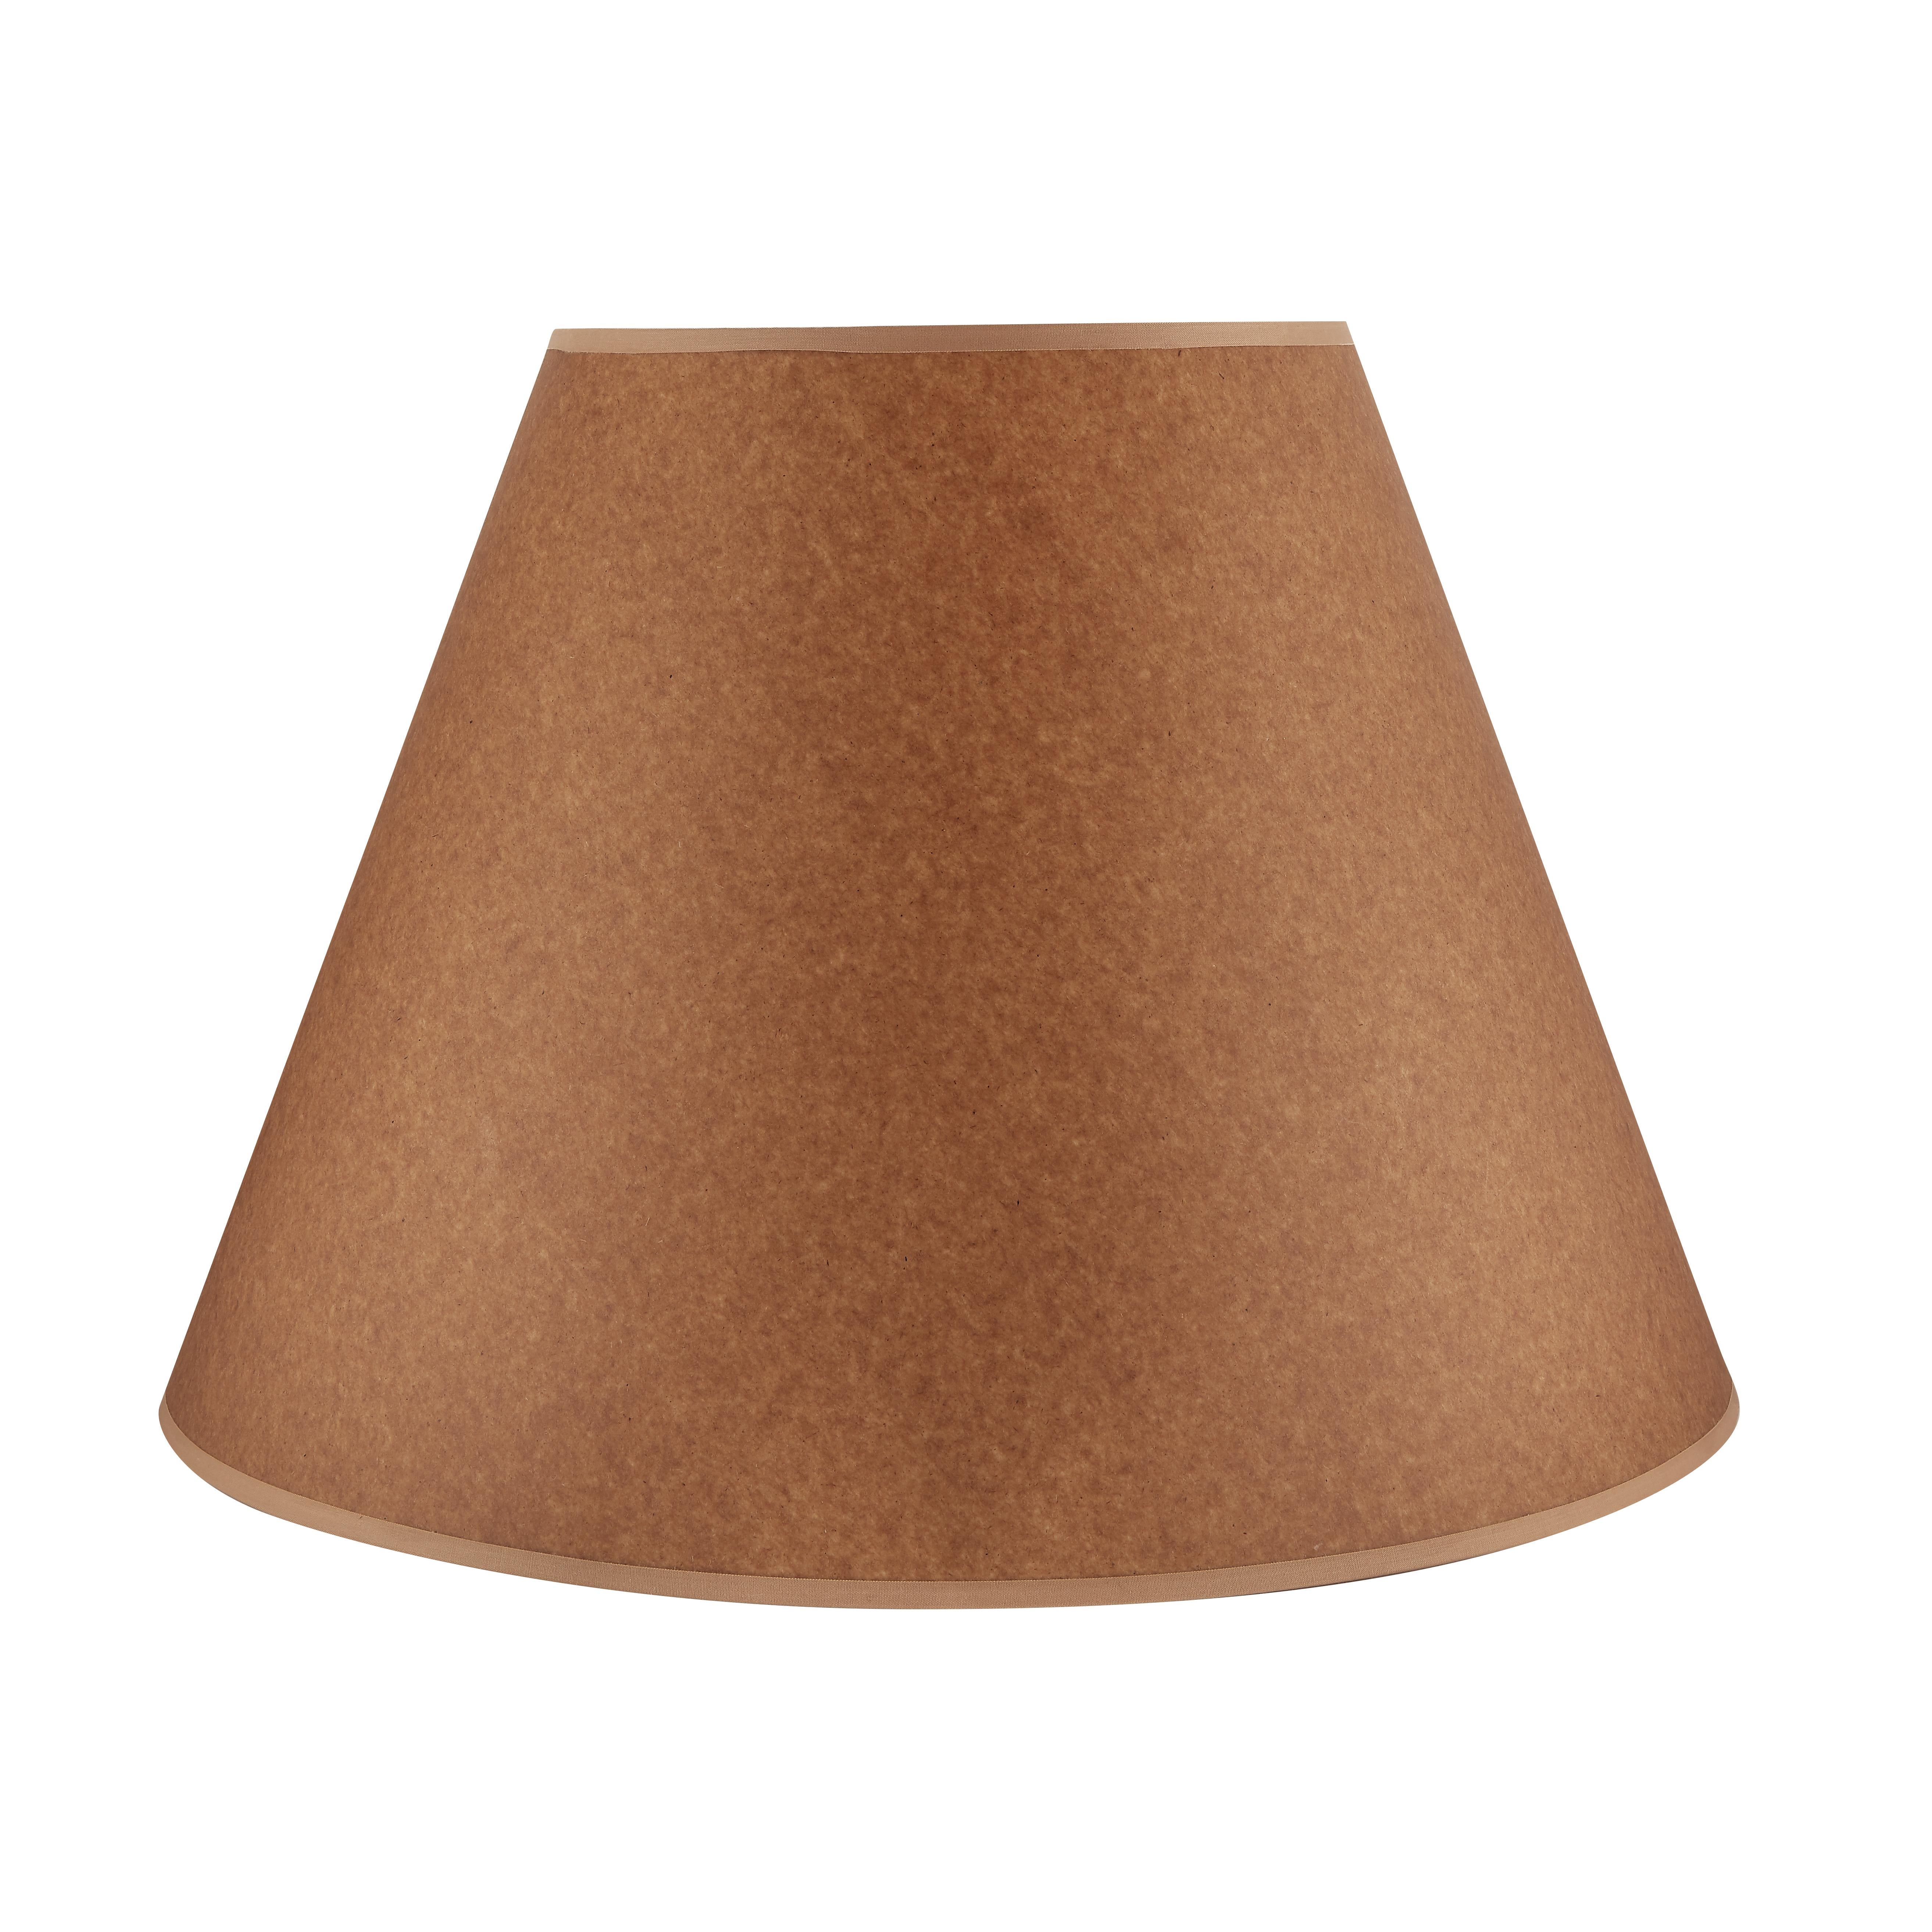 Lampenschirme aus braunem Papier verleihen einem Raum unbestreitbar Wärme und Charme und sorgen für eine einladende Ausstrahlung.